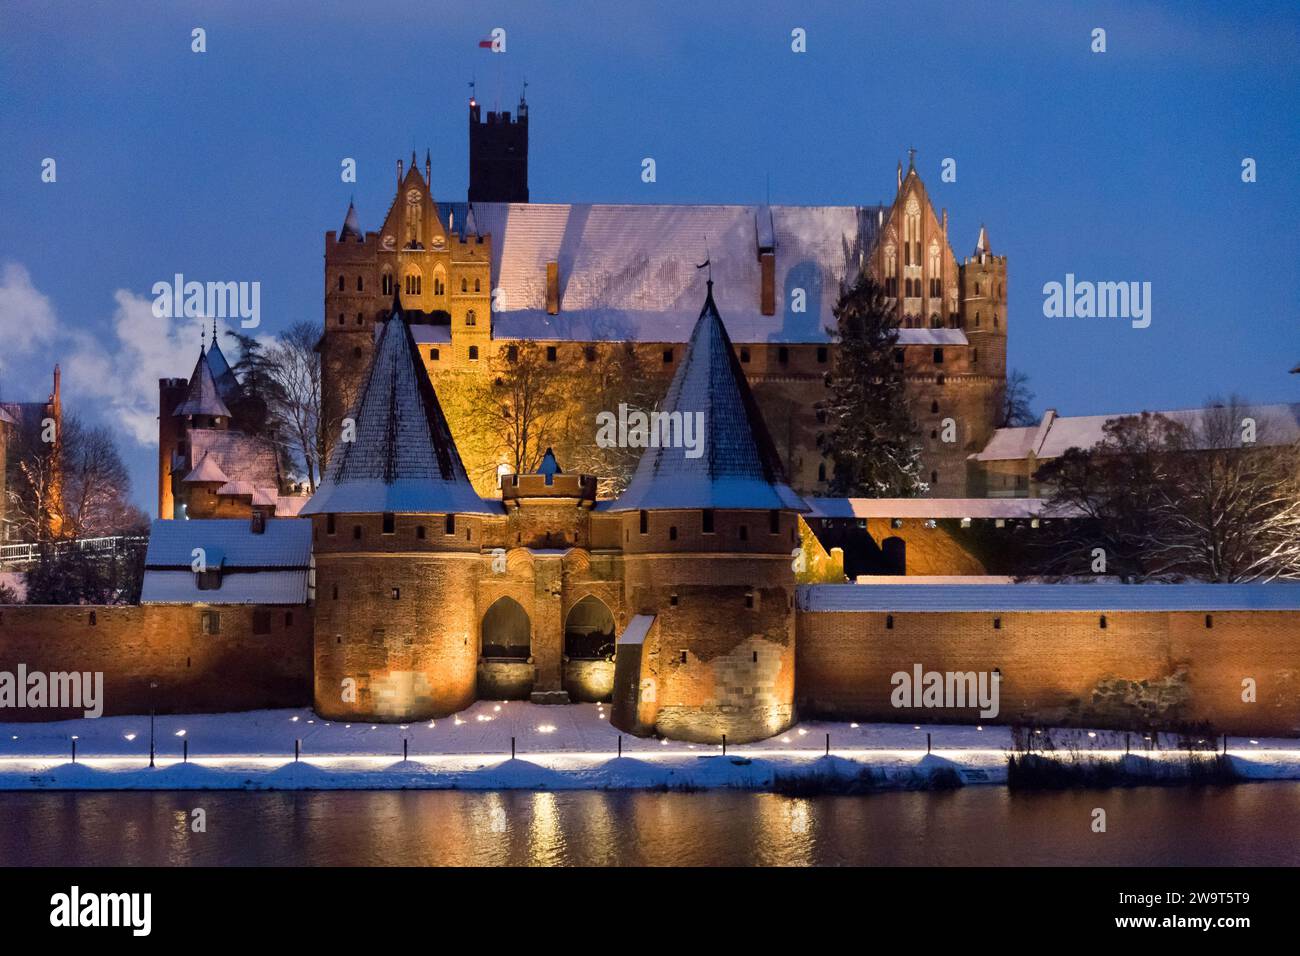 Castello alto dell'ordine Teutonico costruito tra il XIII e il XV secolo, patrimonio dell'umanità dell'UNESCO a Malbork, Polonia © Wojciech Strozyk / Alamy Stock Foto Stock